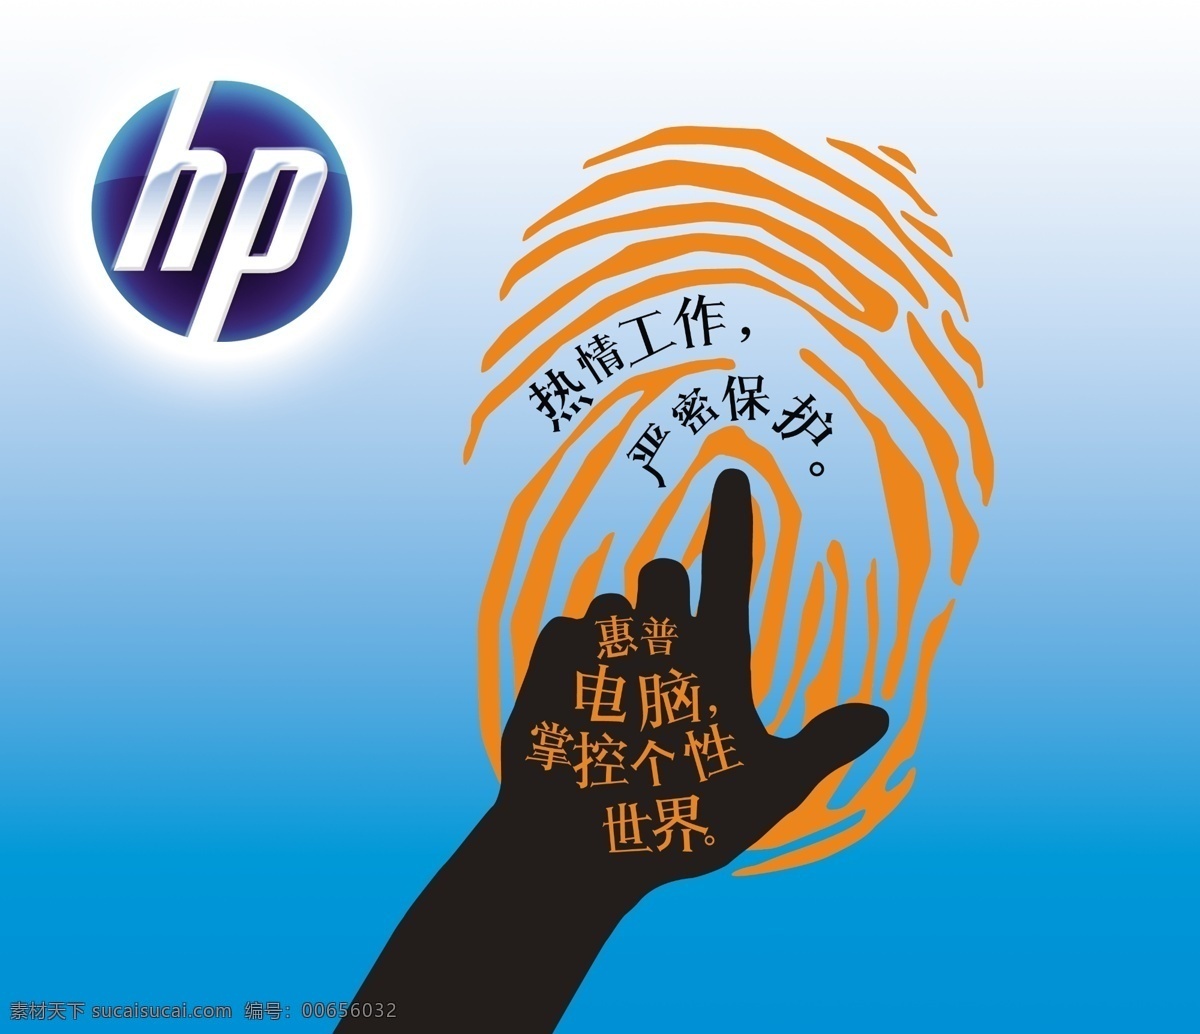 惠普 电脑 形象 海报 惠普电脑 掌控个性世界 笔记本 热情工作 严密保护 手指 指向 指纹 抽象 个性 形象墙 惠普标志 广告设计模板 源文件